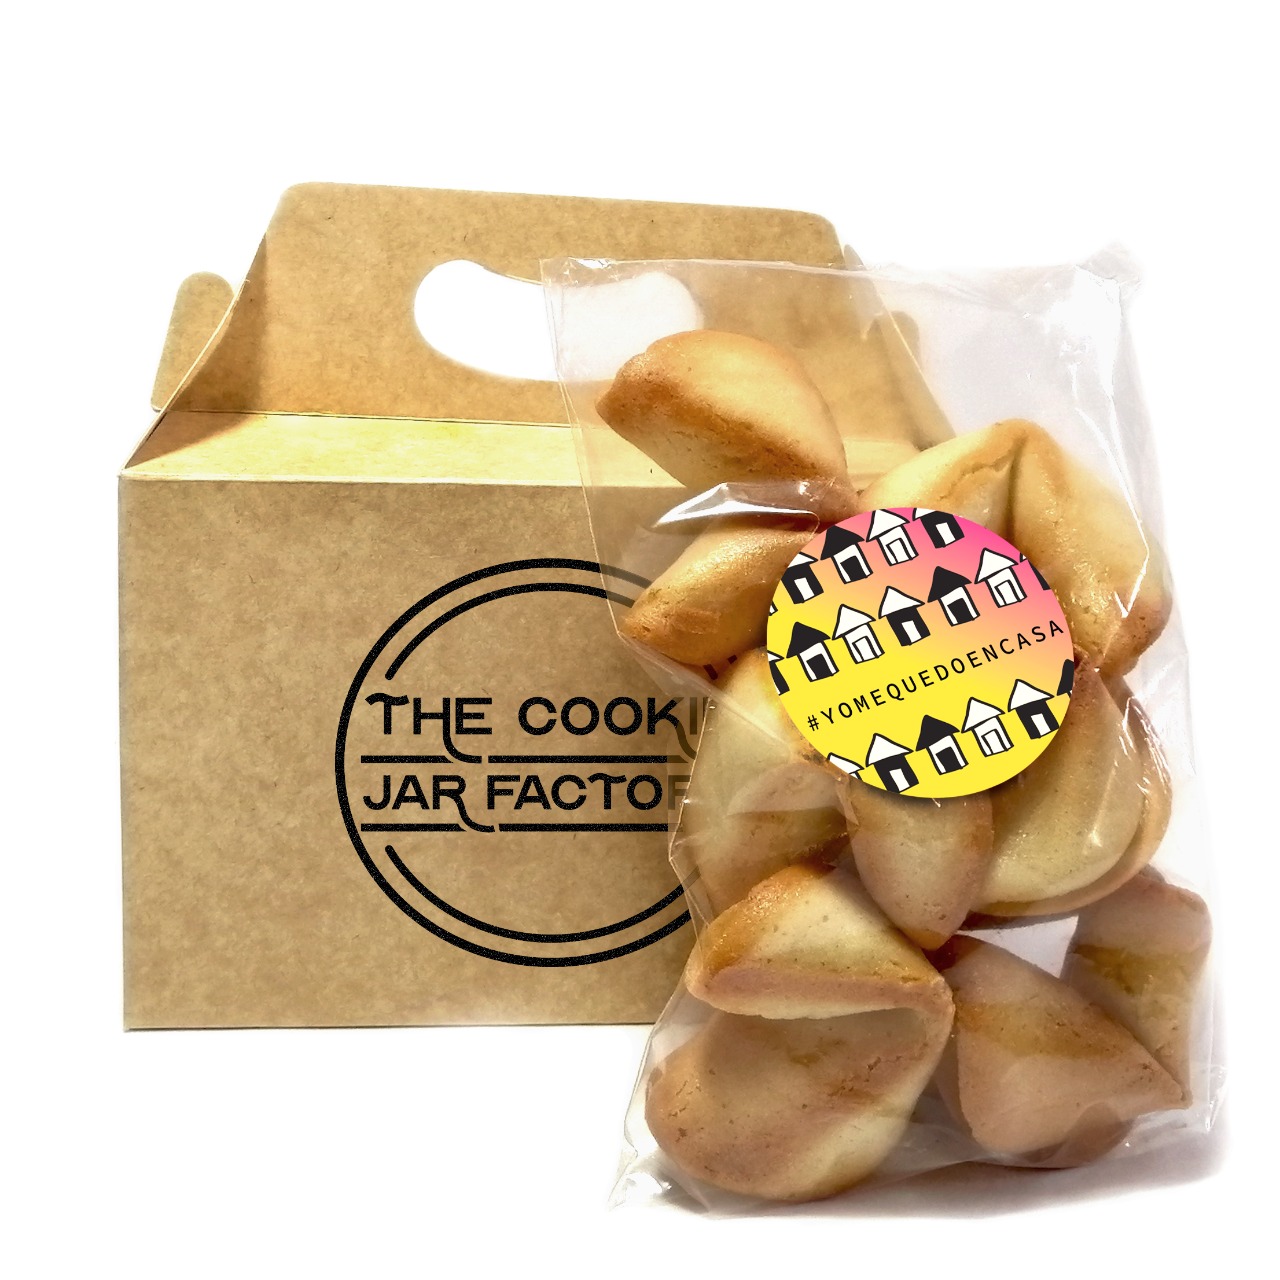 The Cookie Jar Factory: el crujiente y delicioso emprendimiento de galletas de la fortuna